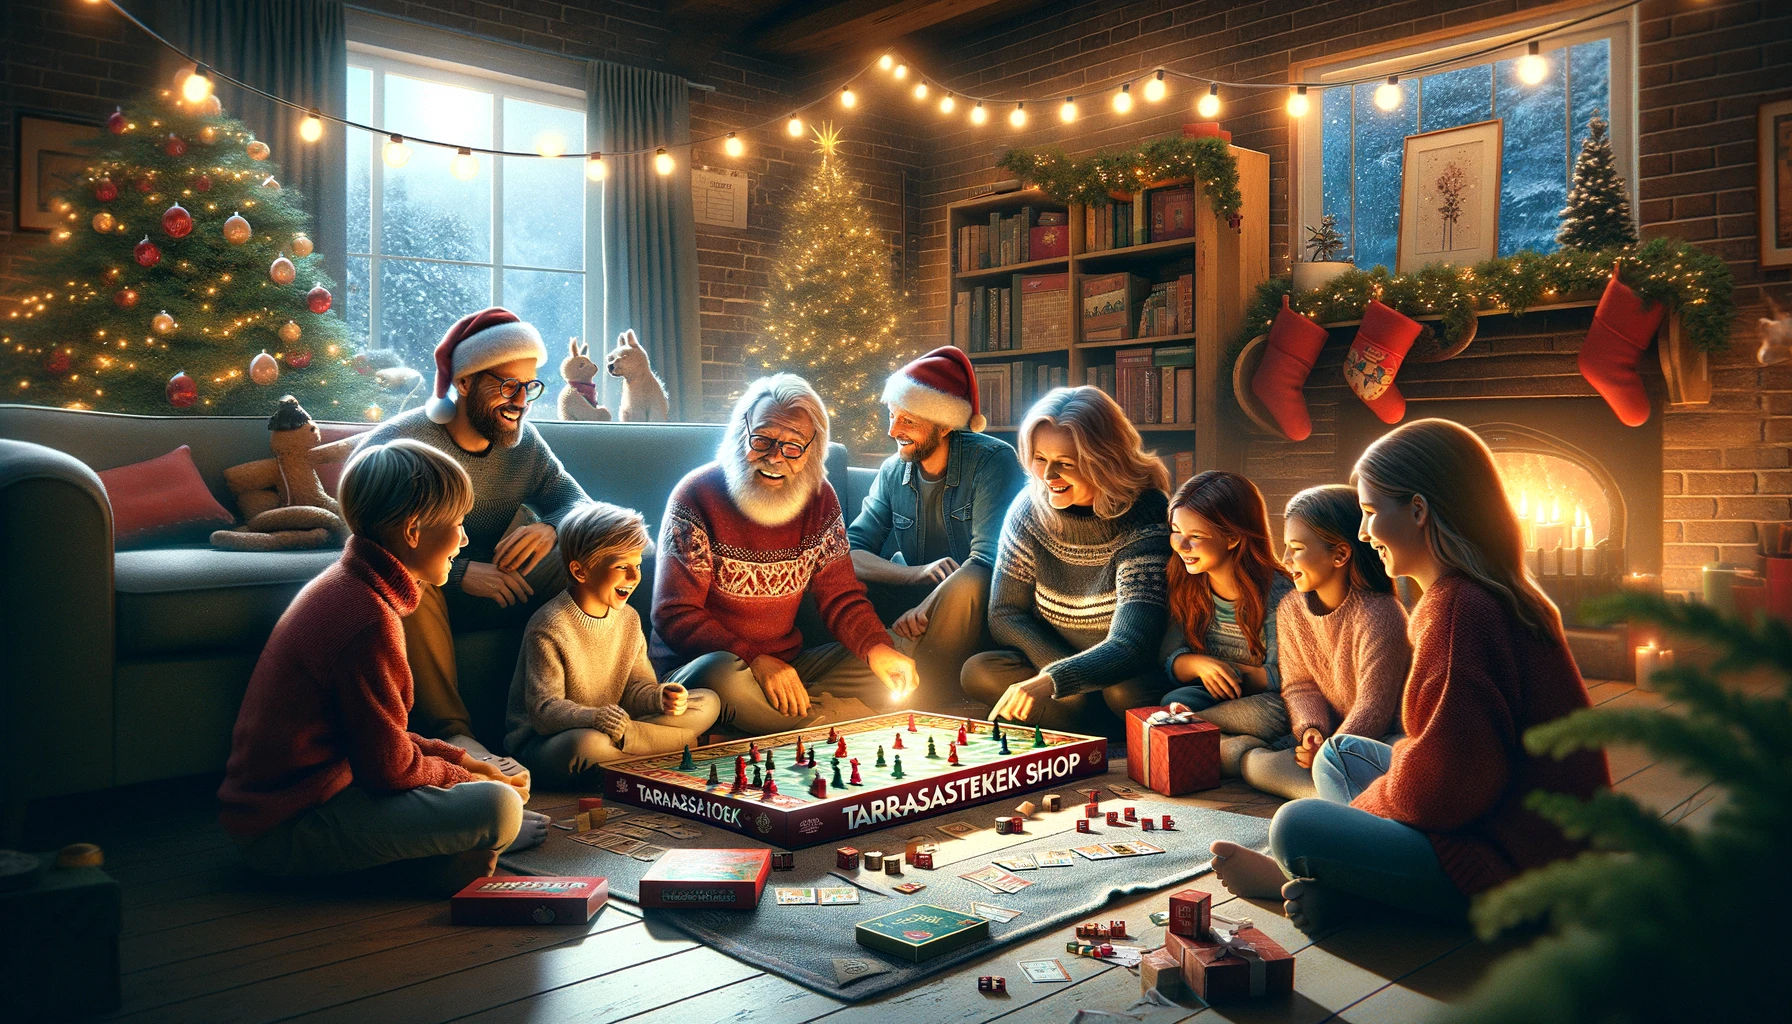 Társasjátékok Története és Karácsony